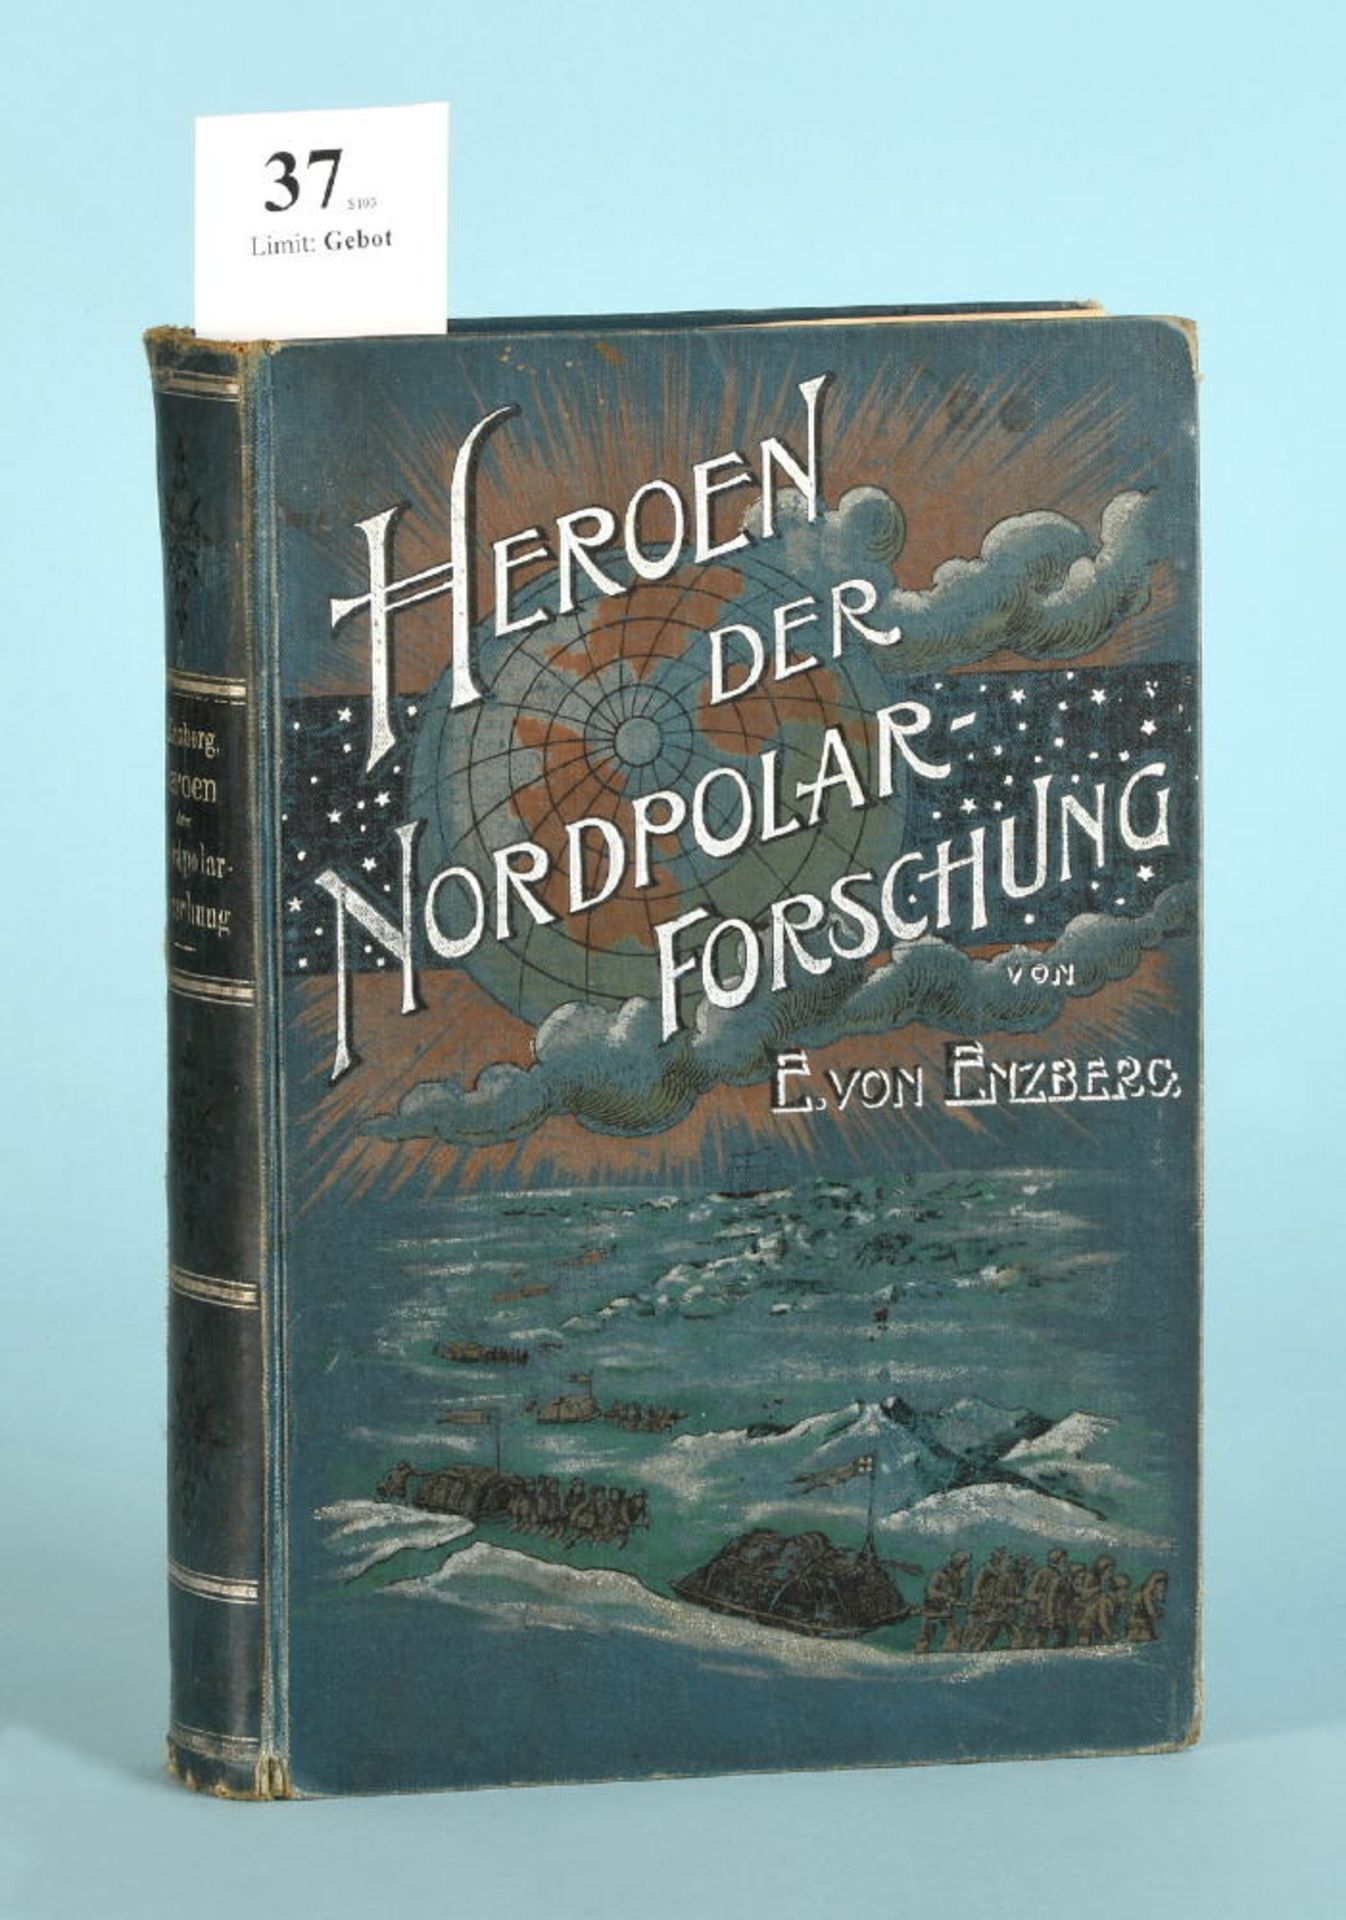 Enzberg, Eugen von "Heroen der Nordpolarforschung"55 Ill. u. 2 Karten, 439 S., Vlg. O. Reisland,